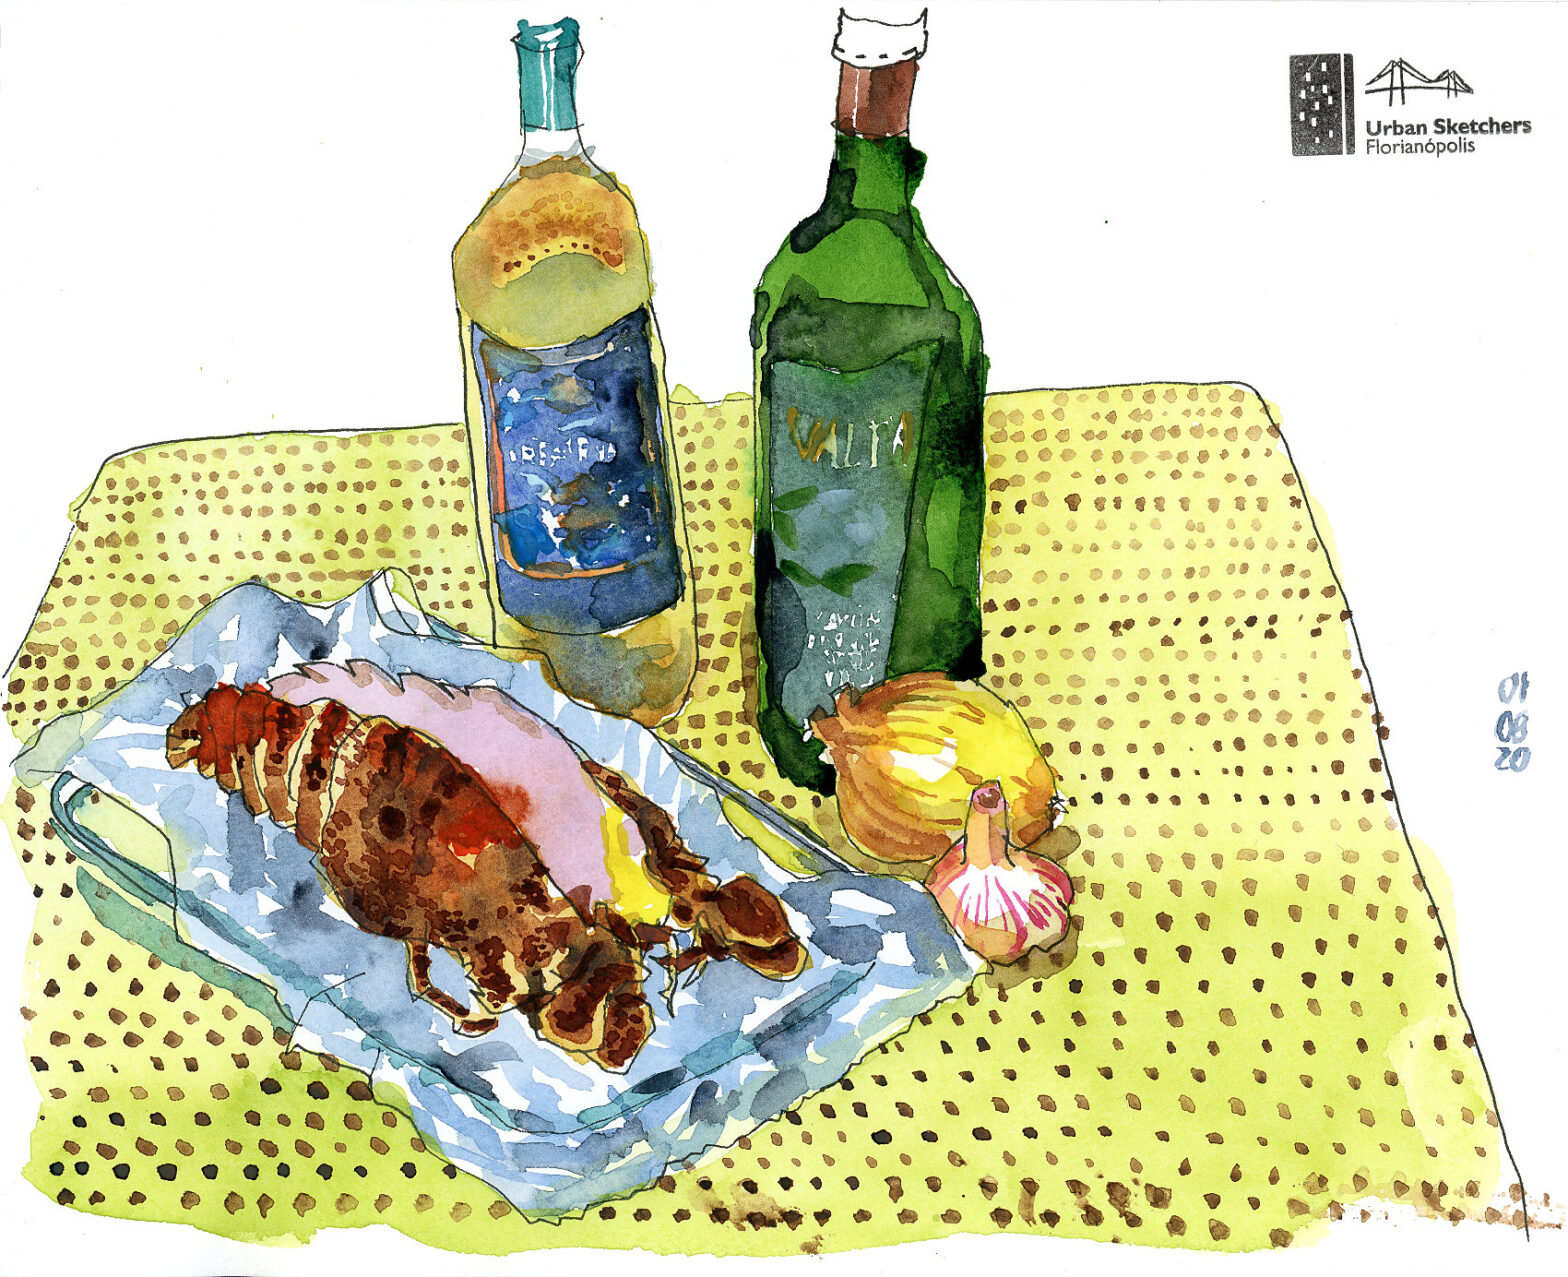 Desenho em aquarela de uma lagosta serrada ao meio com cebola, alho e duas garrafas ao fundo